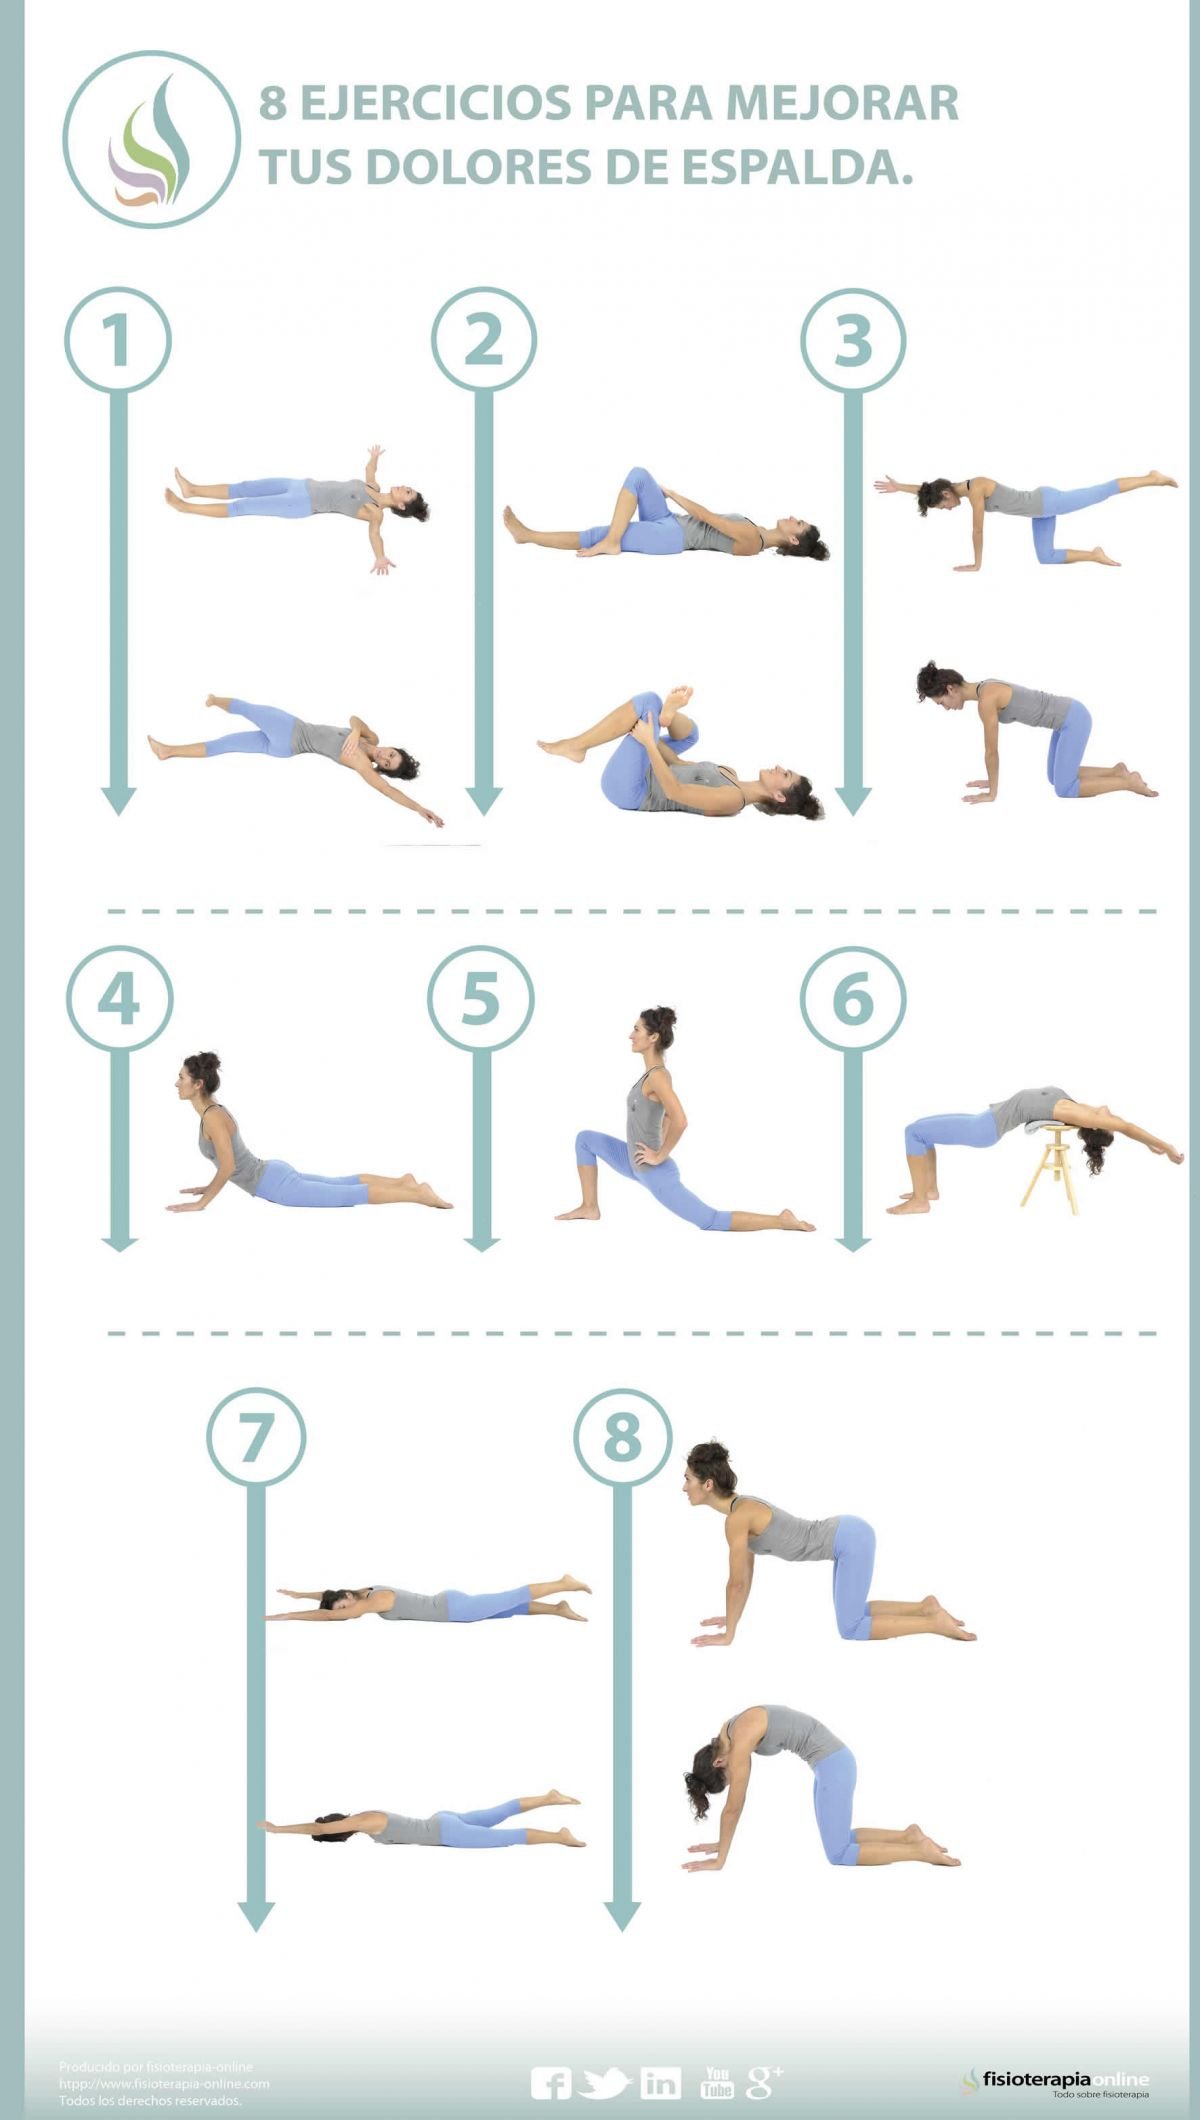 Alivio del dolor de espalda: ejercicios para hacer tumbado boca arriba